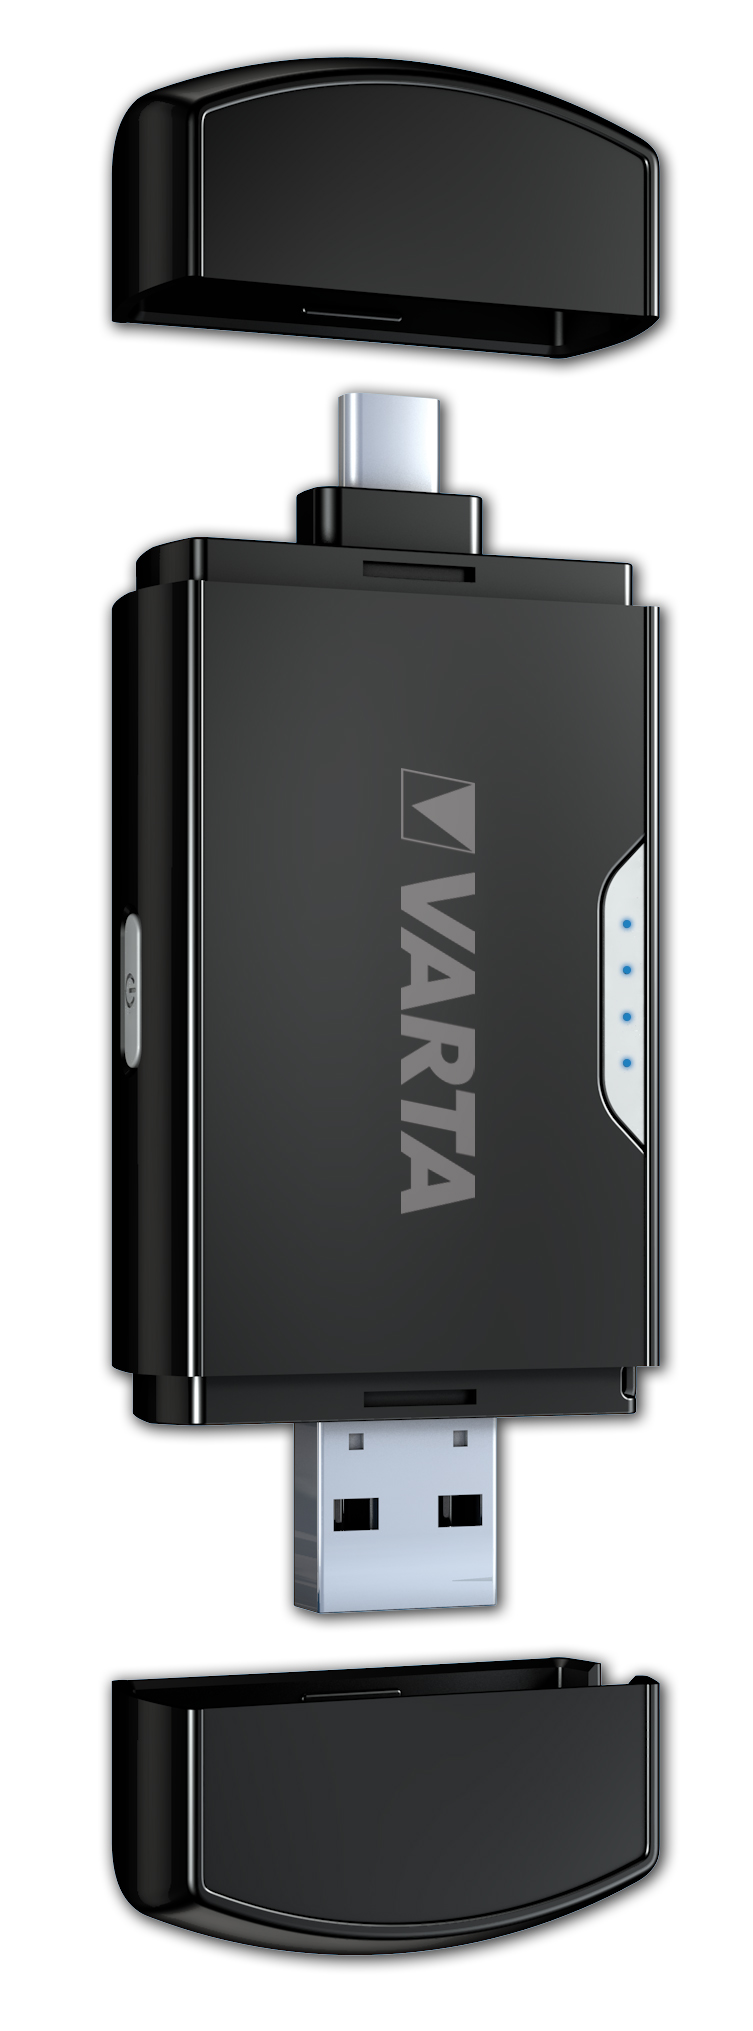 VARTA Phone Power 800